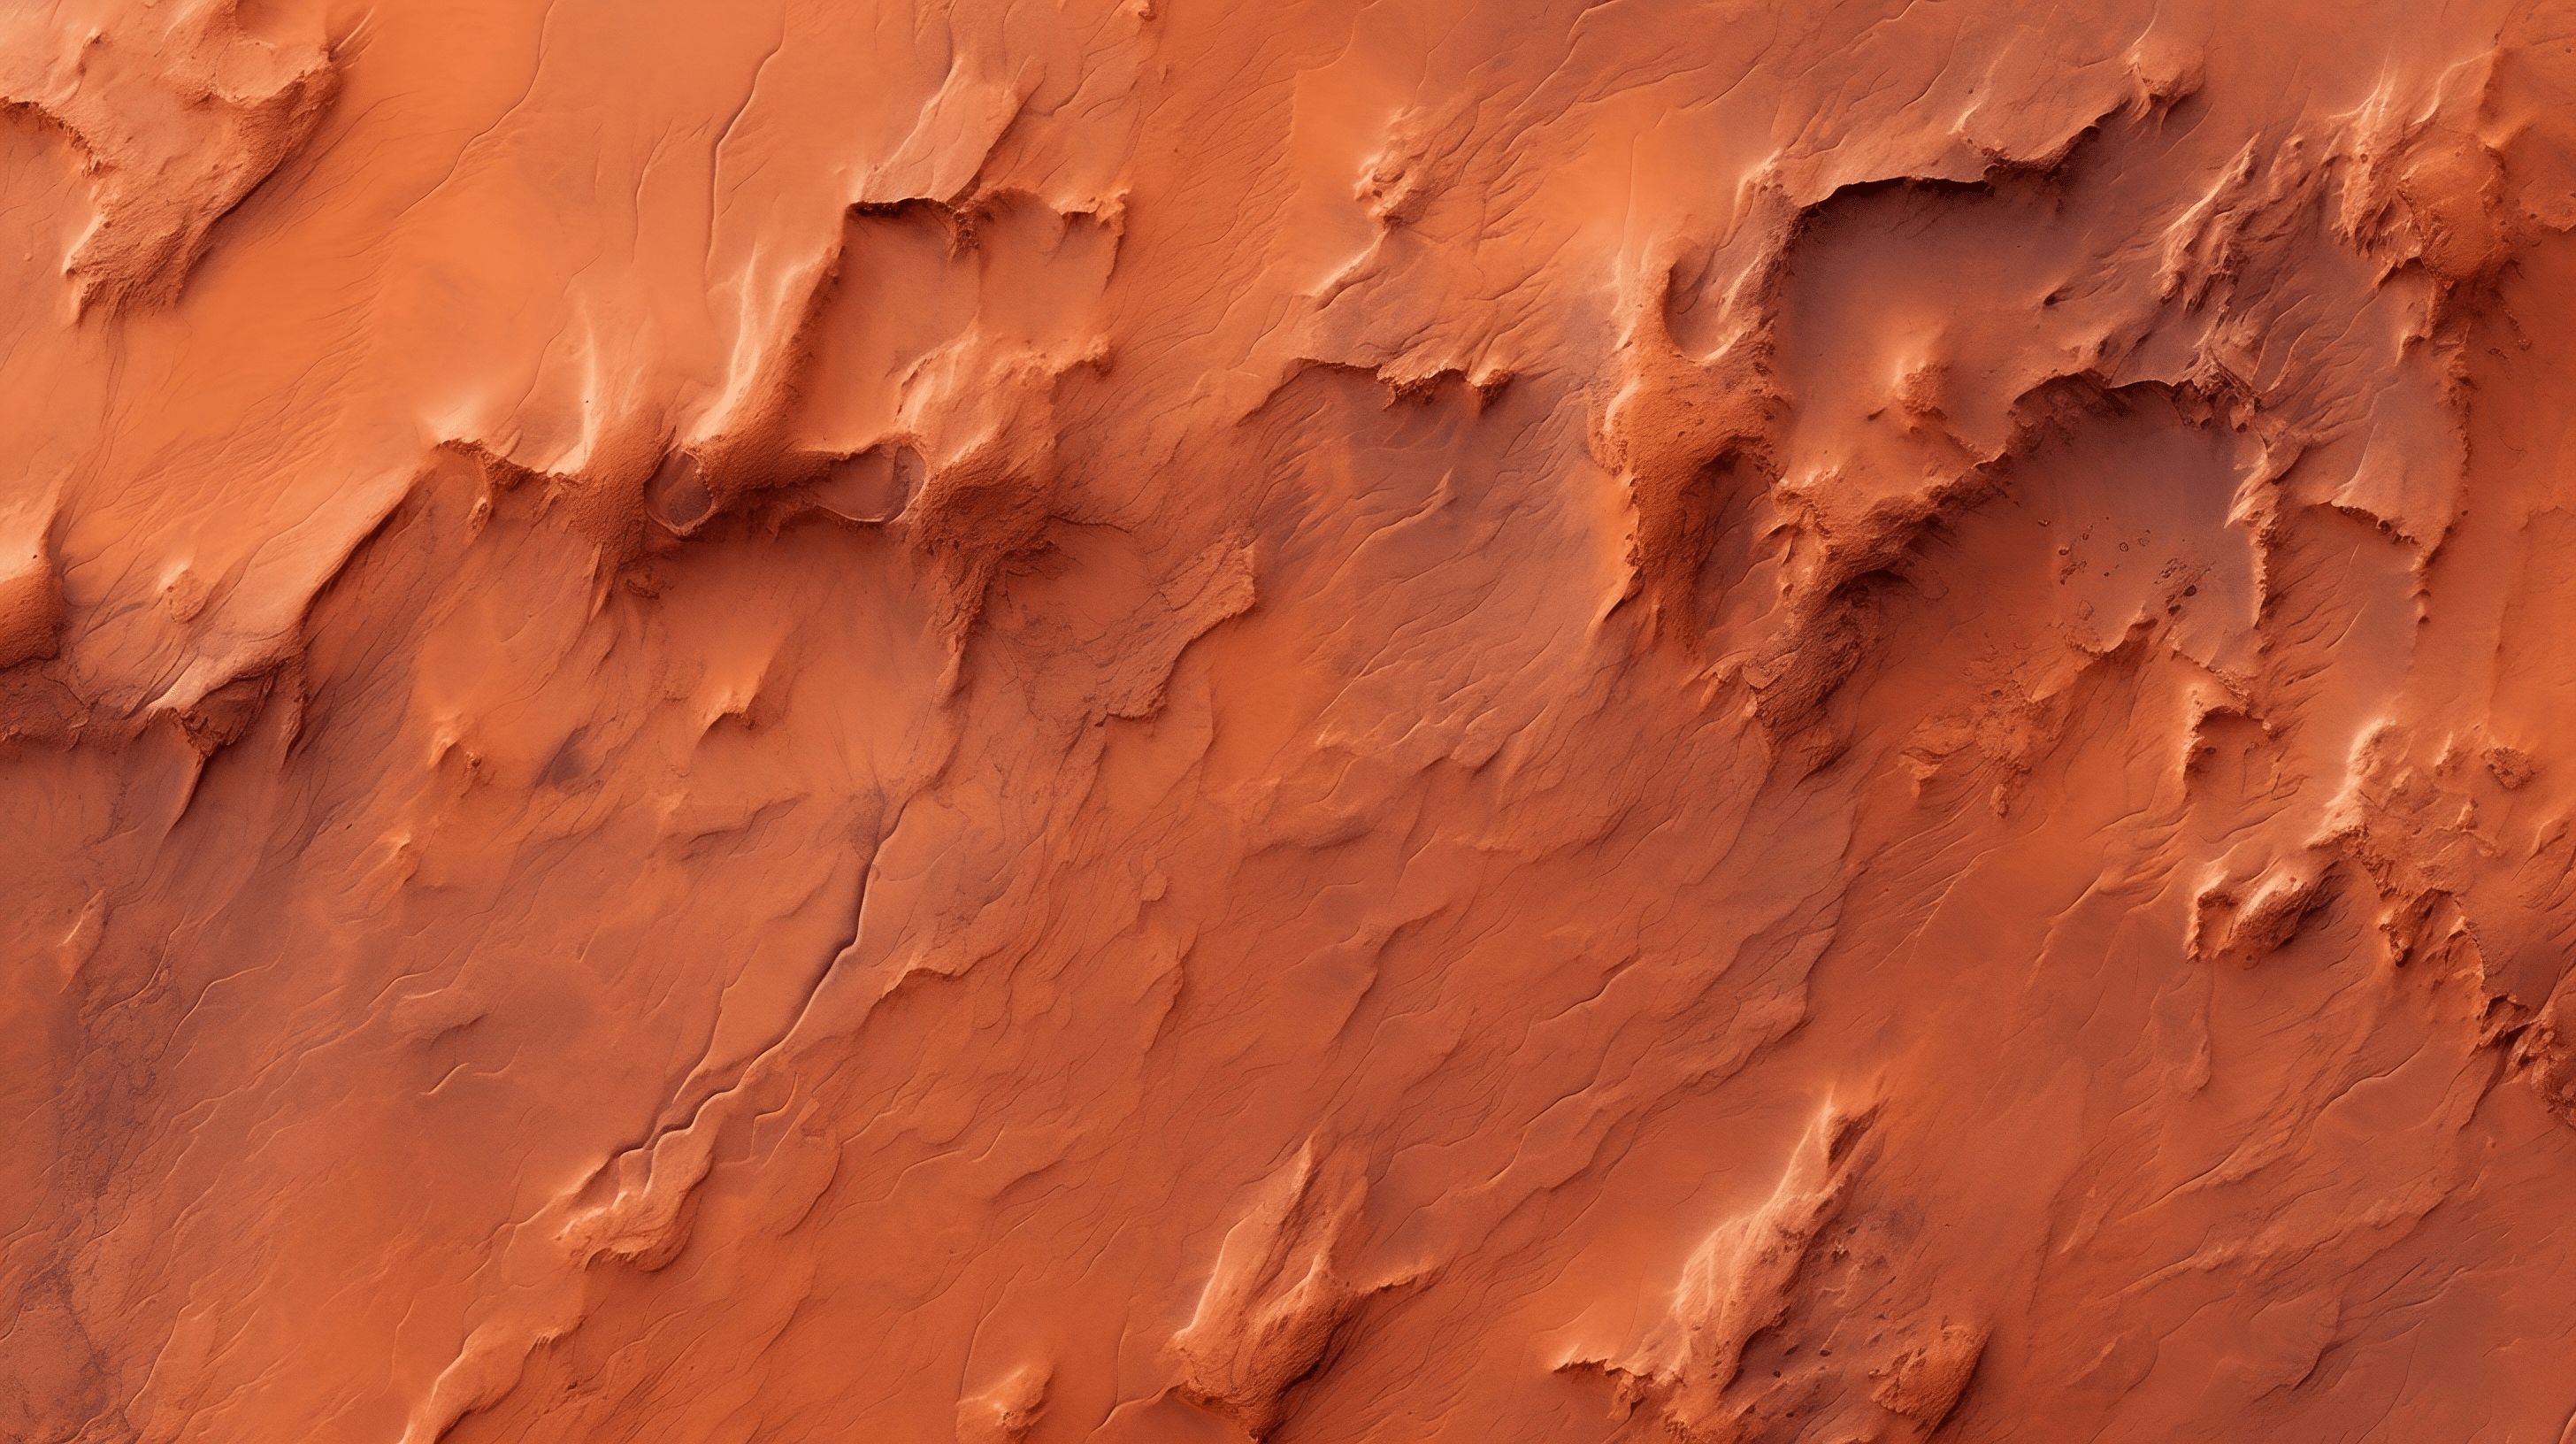 Mars surface closeup